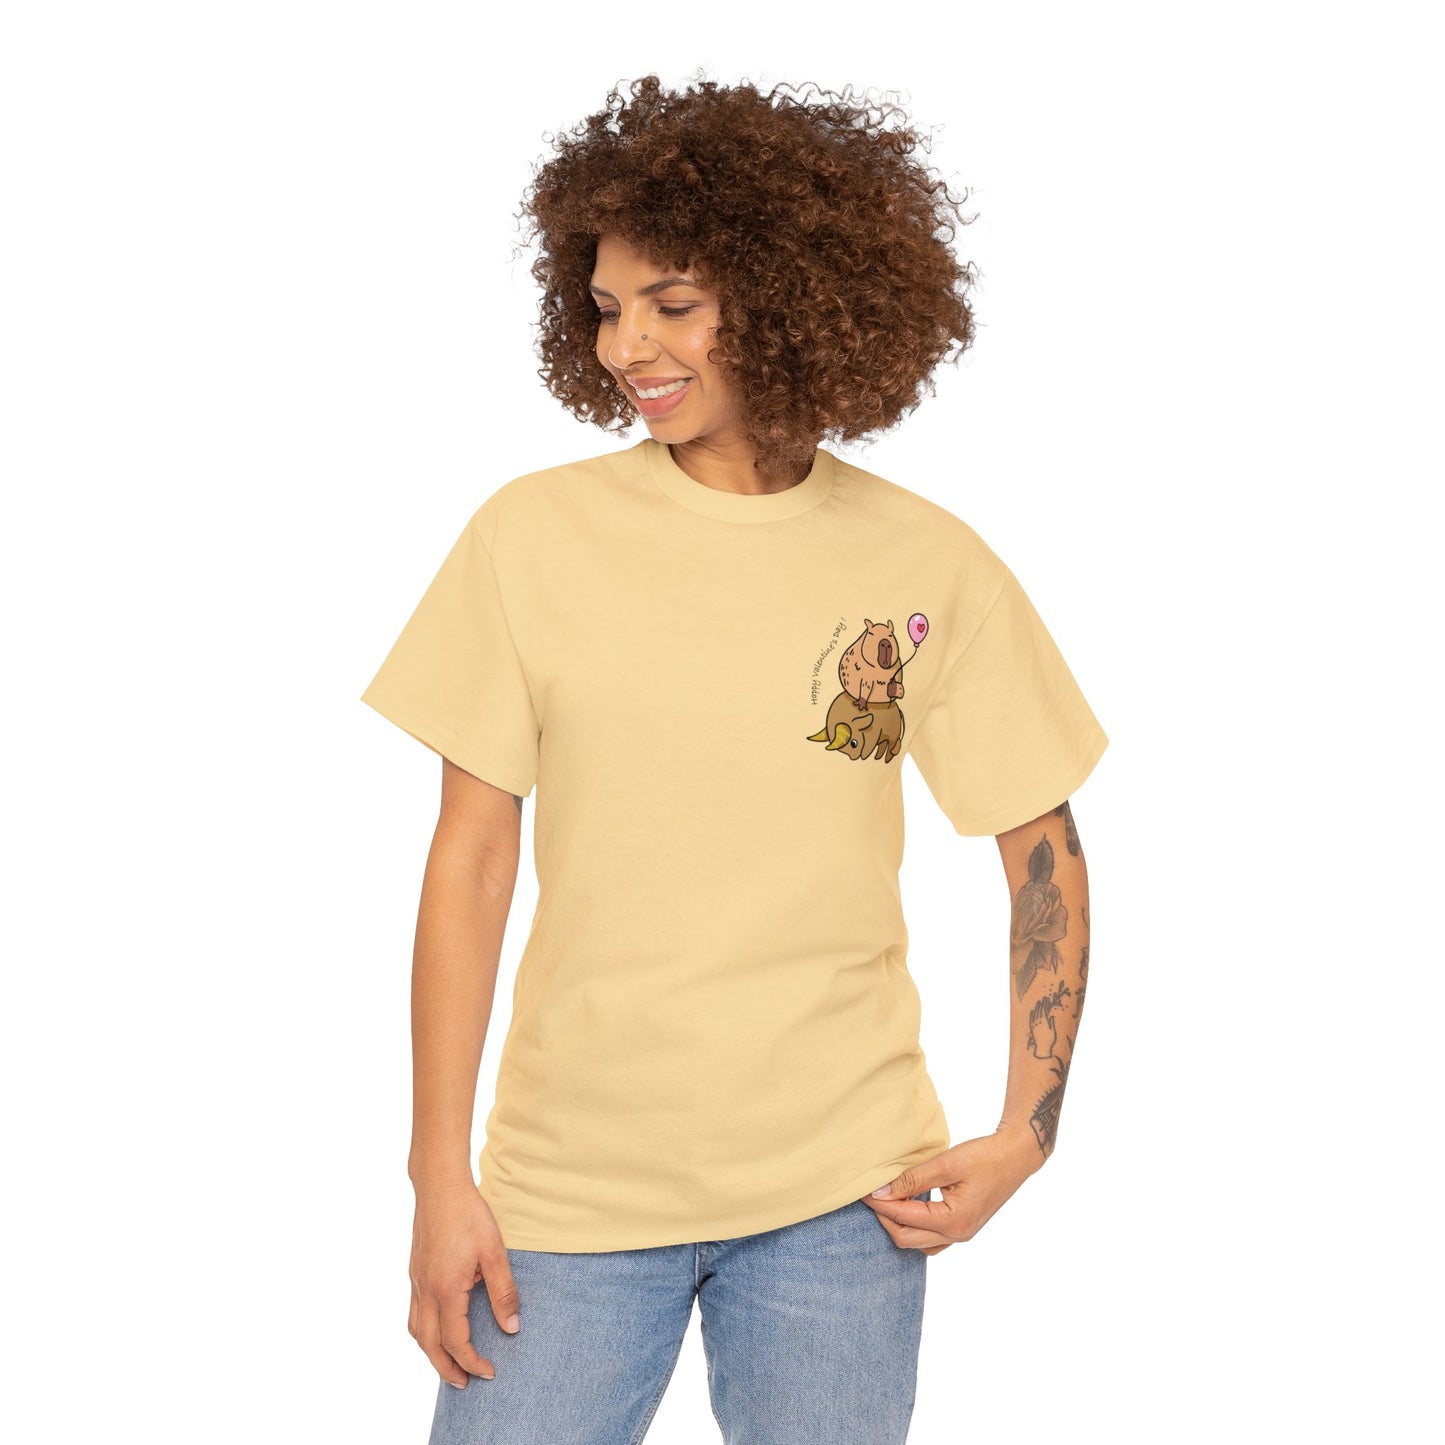 Taurus T-shirt women